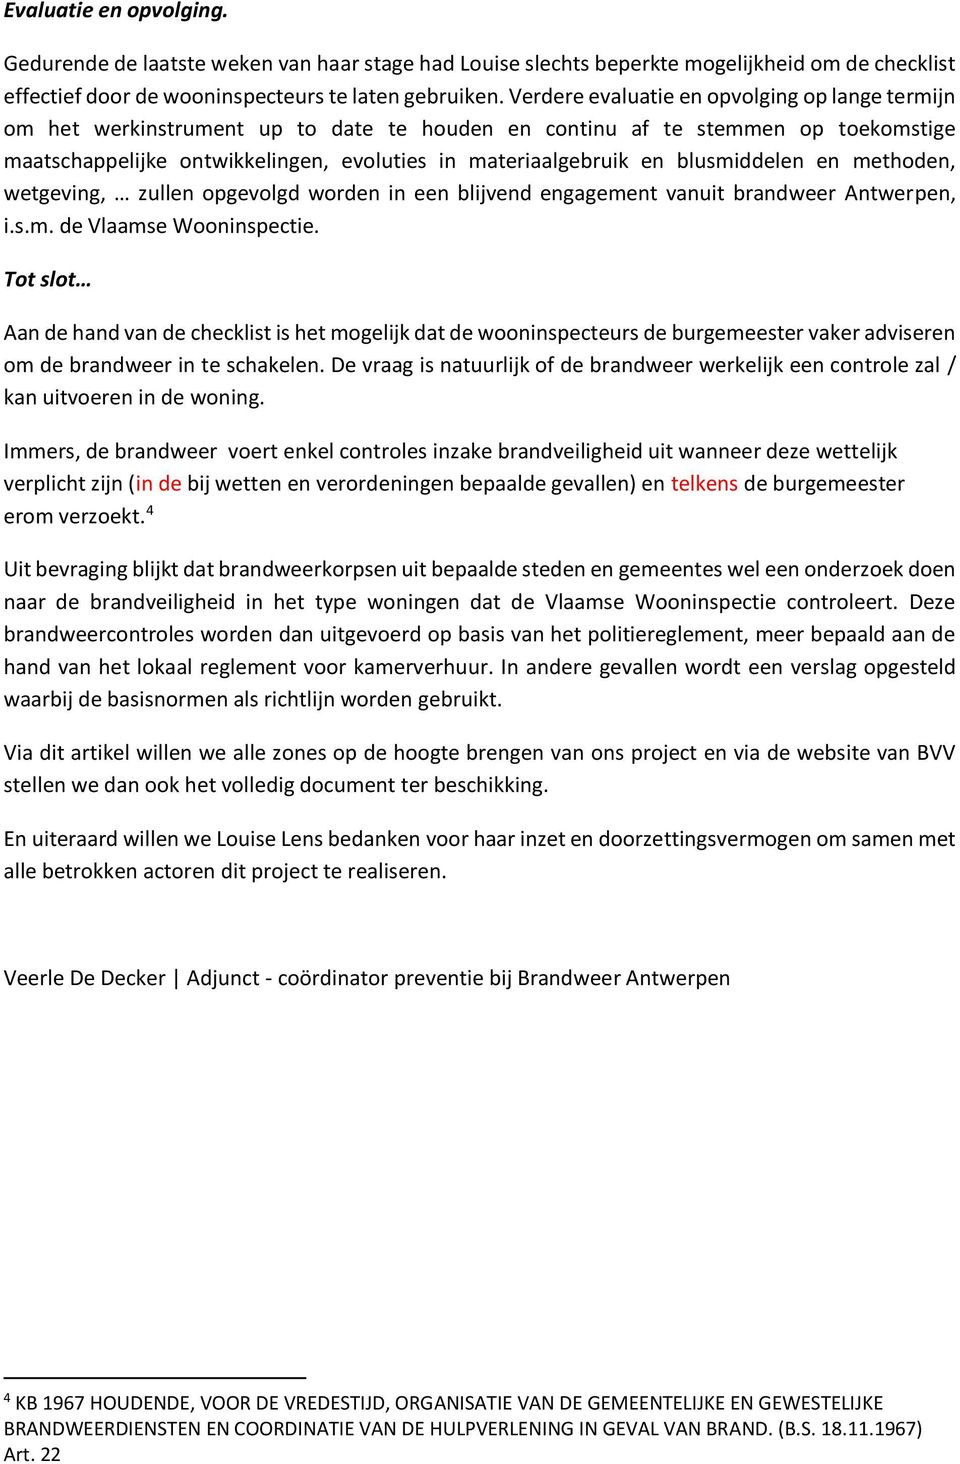 blusmiddelen en methoden, wetgeving, zullen opgevolgd worden in een blijvend engagement vanuit brandweer Antwerpen, i.s.m. de Vlaamse Wooninspectie.